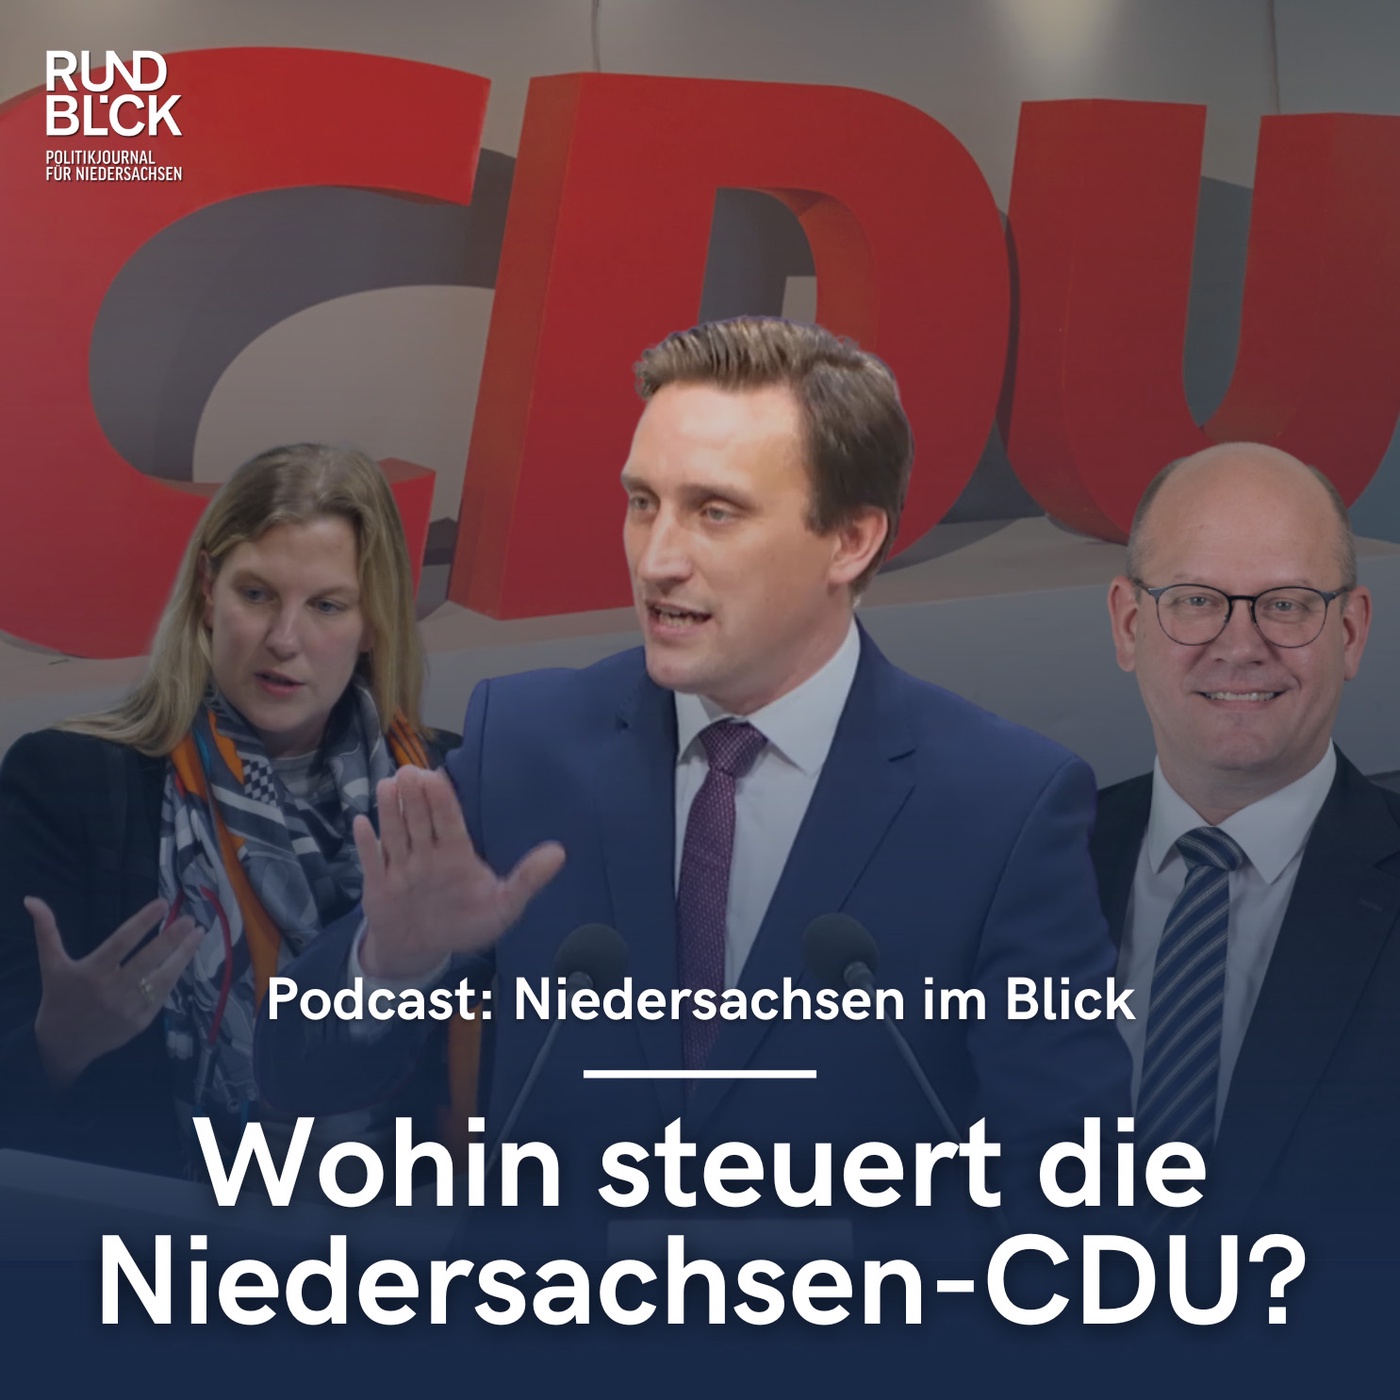 Wohin steuert die Niedersachsen-CDU?